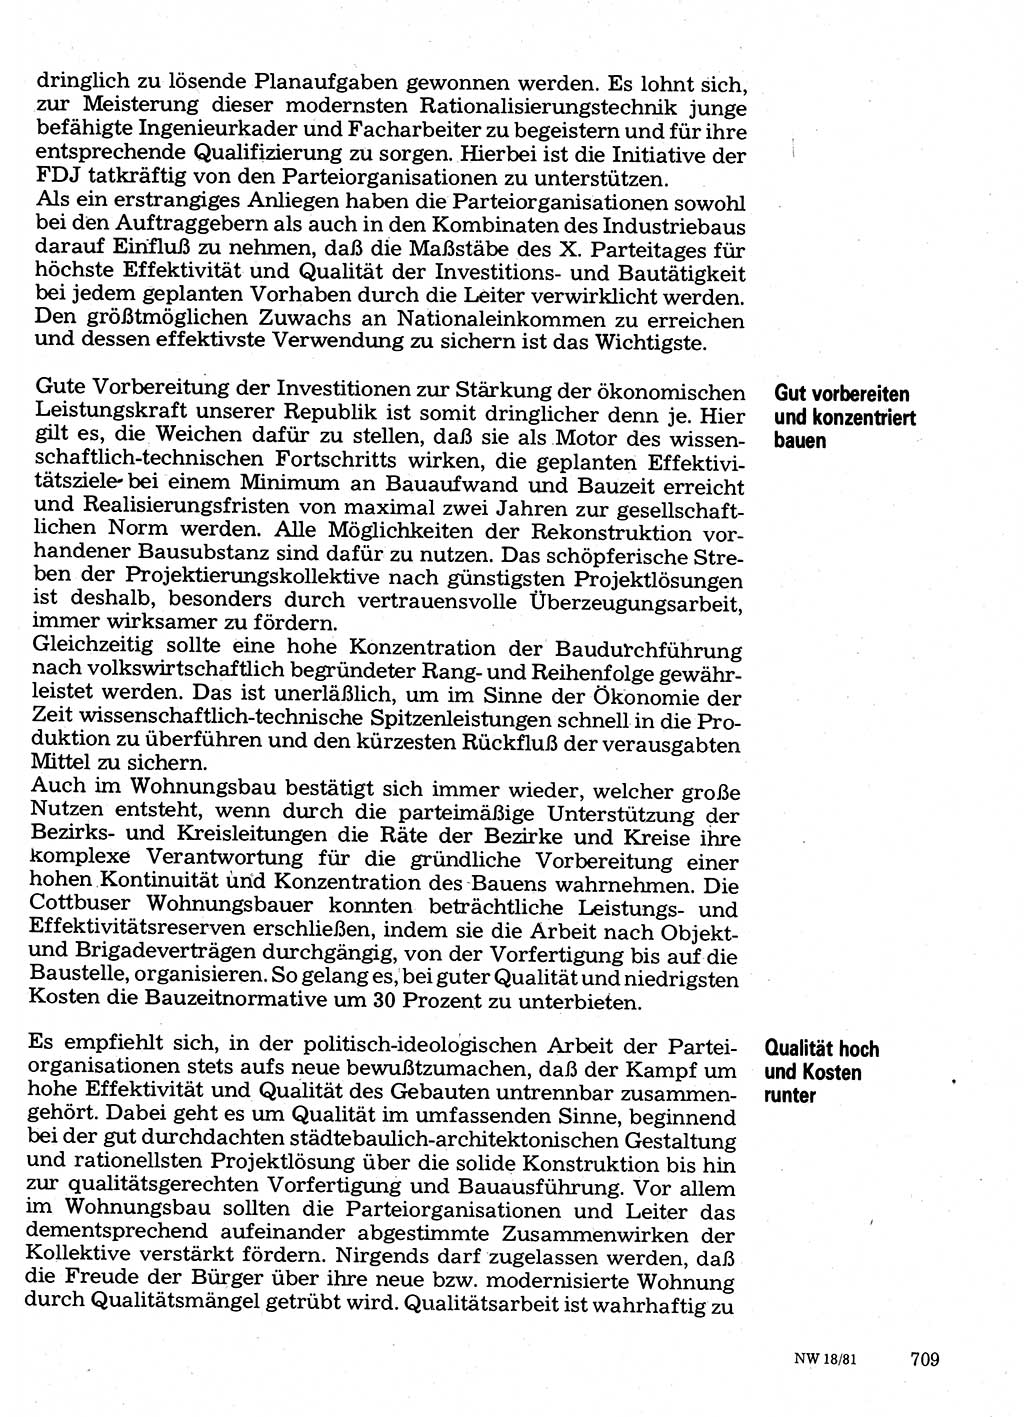 Neuer Weg (NW), Organ des Zentralkomitees (ZK) der SED (Sozialistische Einheitspartei Deutschlands) für Fragen des Parteilebens, 36. Jahrgang [Deutsche Demokratische Republik (DDR)] 1981, Seite 709 (NW ZK SED DDR 1981, S. 709)